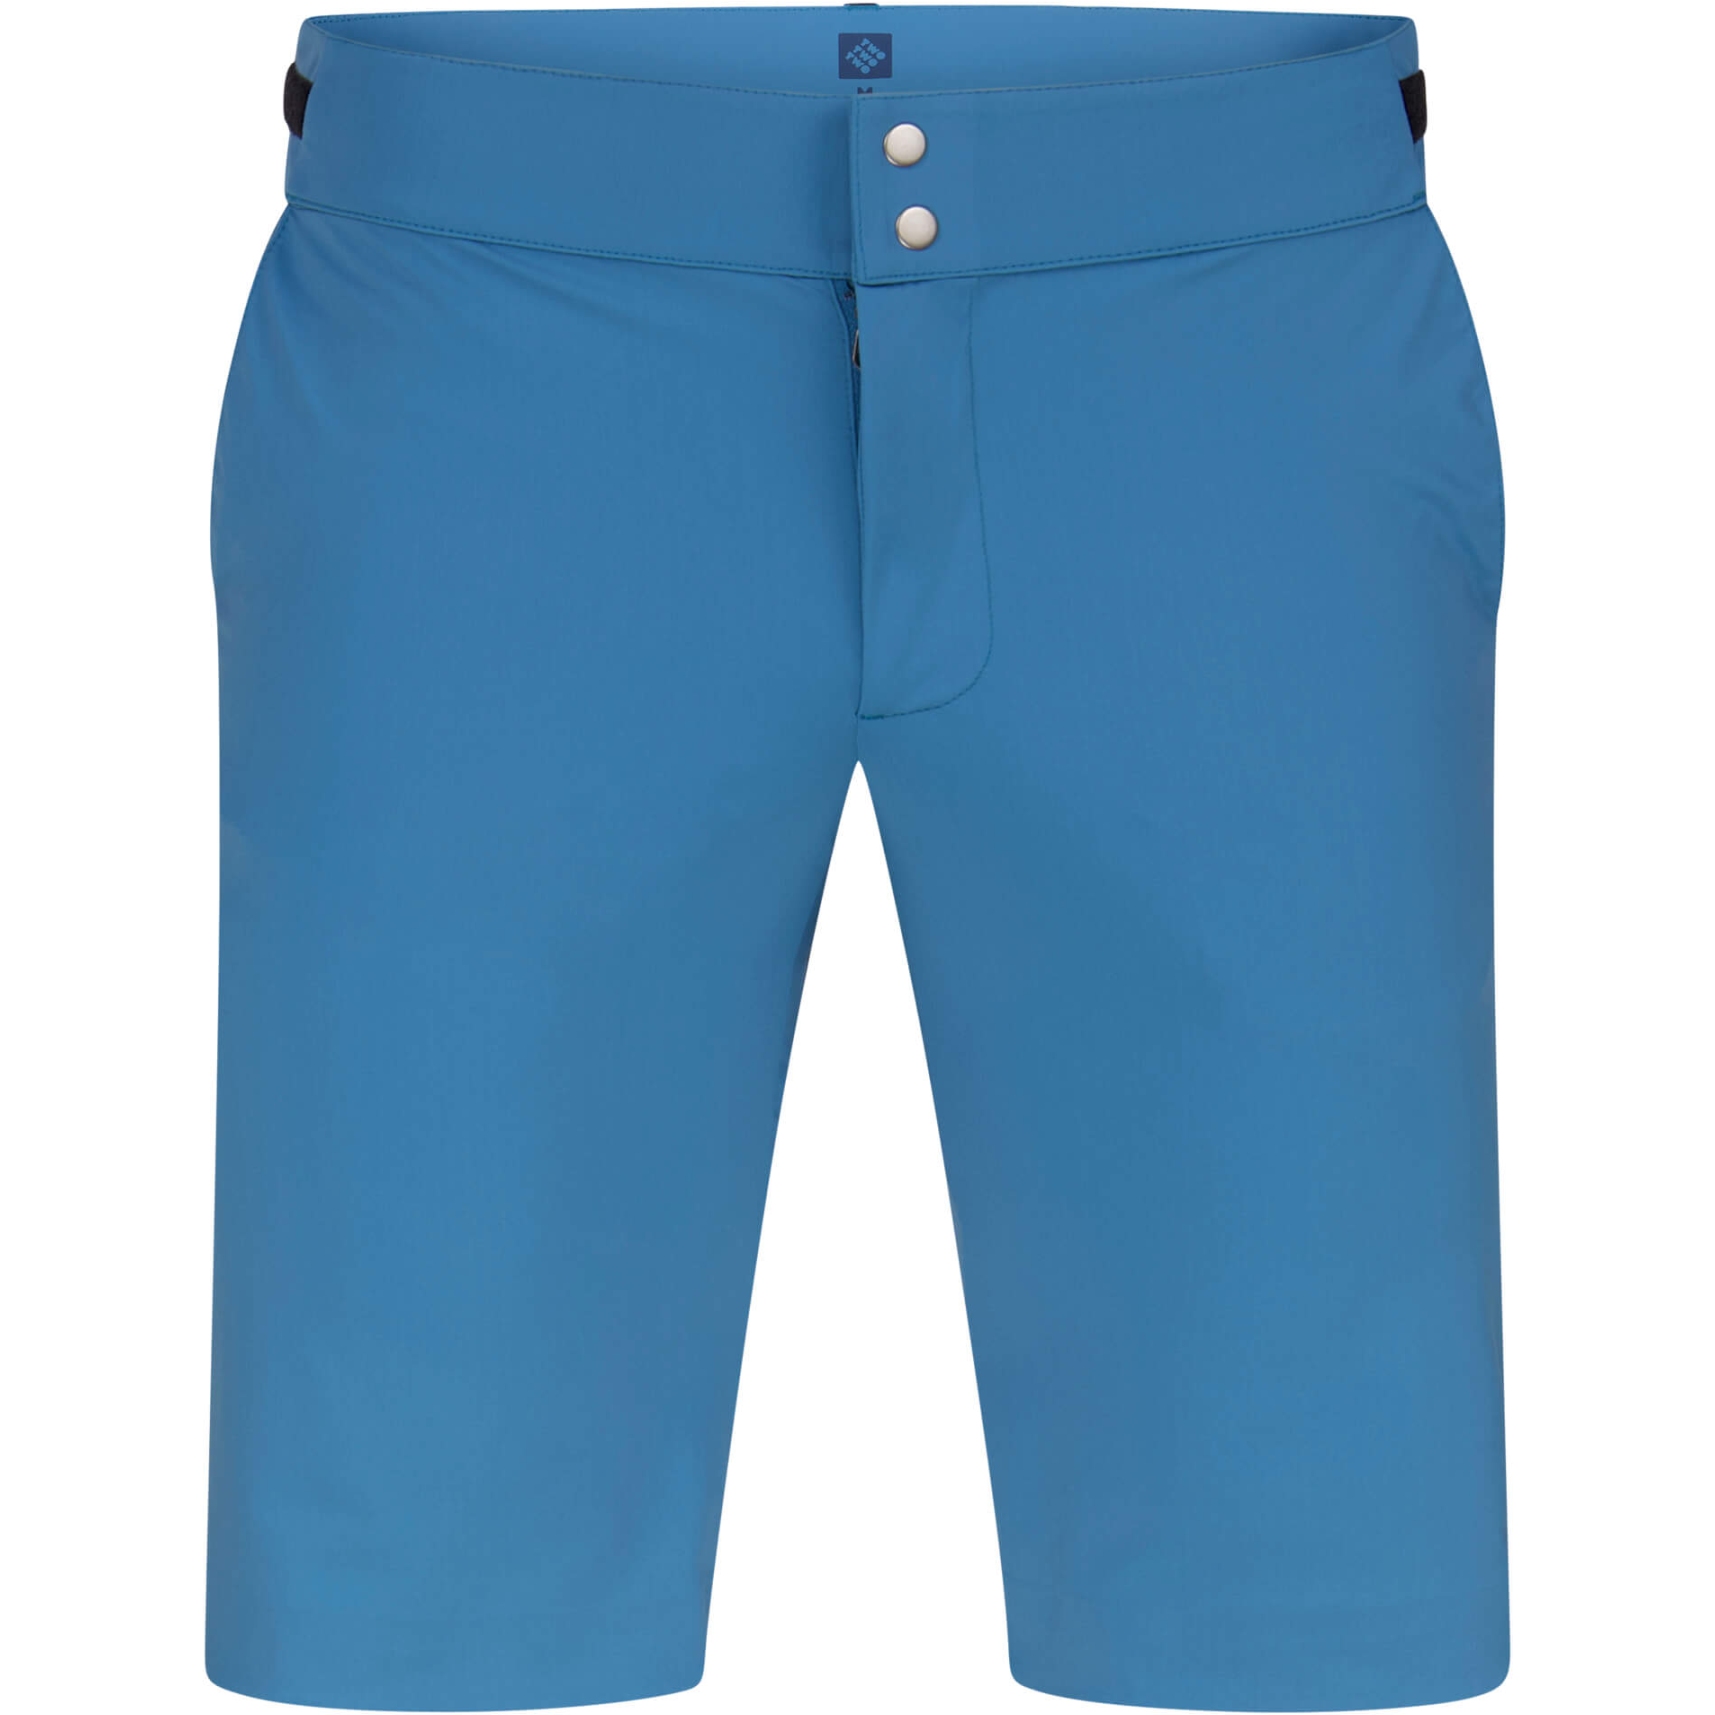 Produktbild von triple2 Barg Evo Shorts - bluesteel